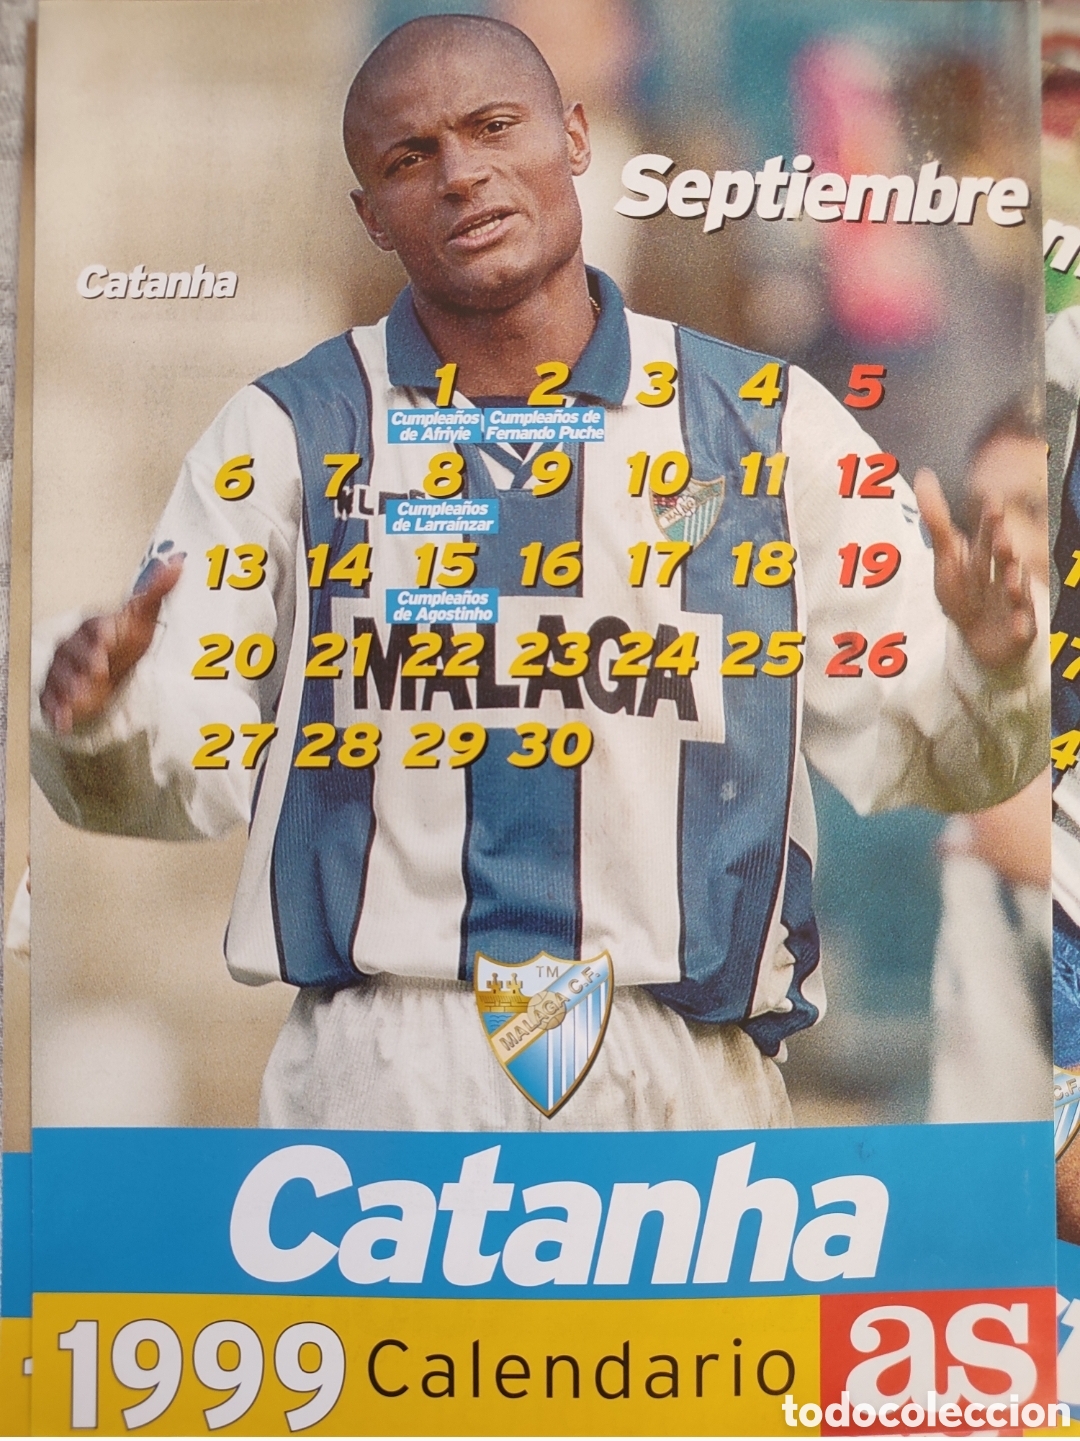 Calendario del málaga club de fútbol